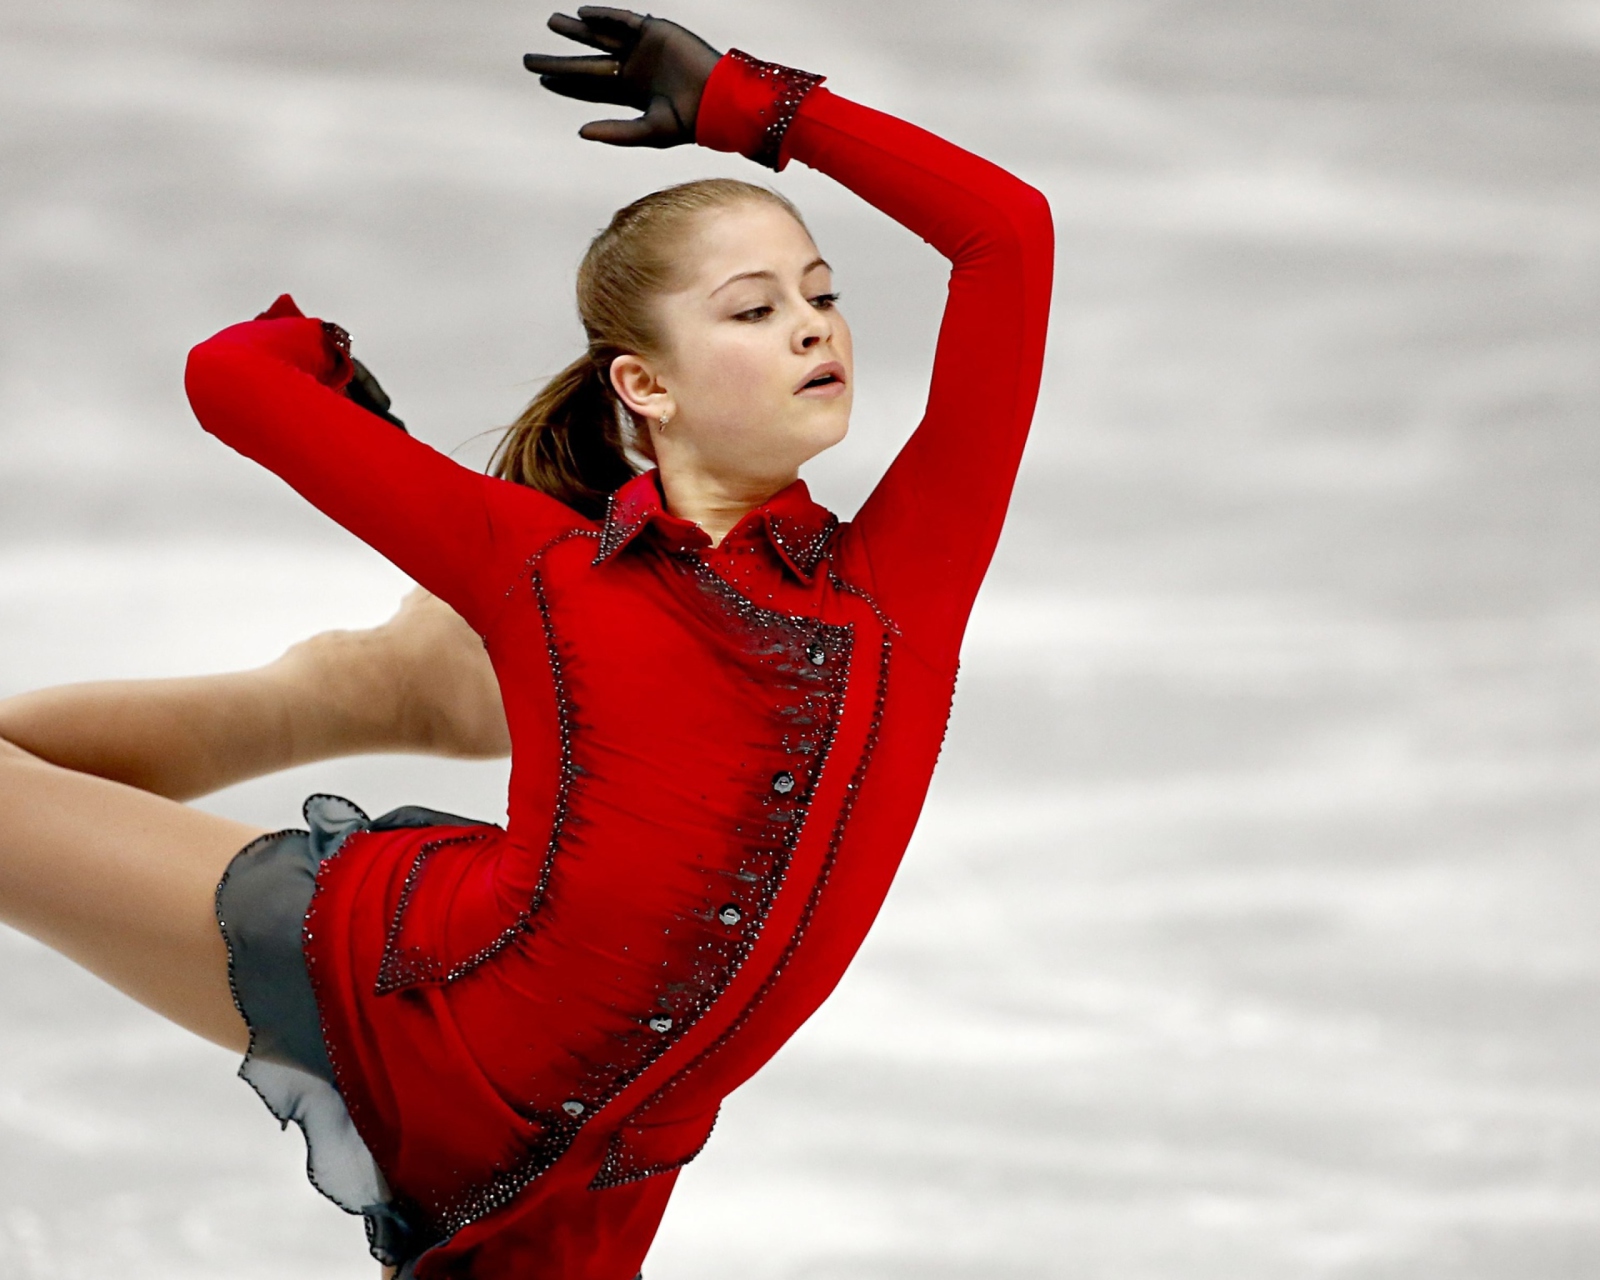 Yulia Lipnitskaya Champion In Sochi 2014 Winter Olympics wallpaper 1600x1280